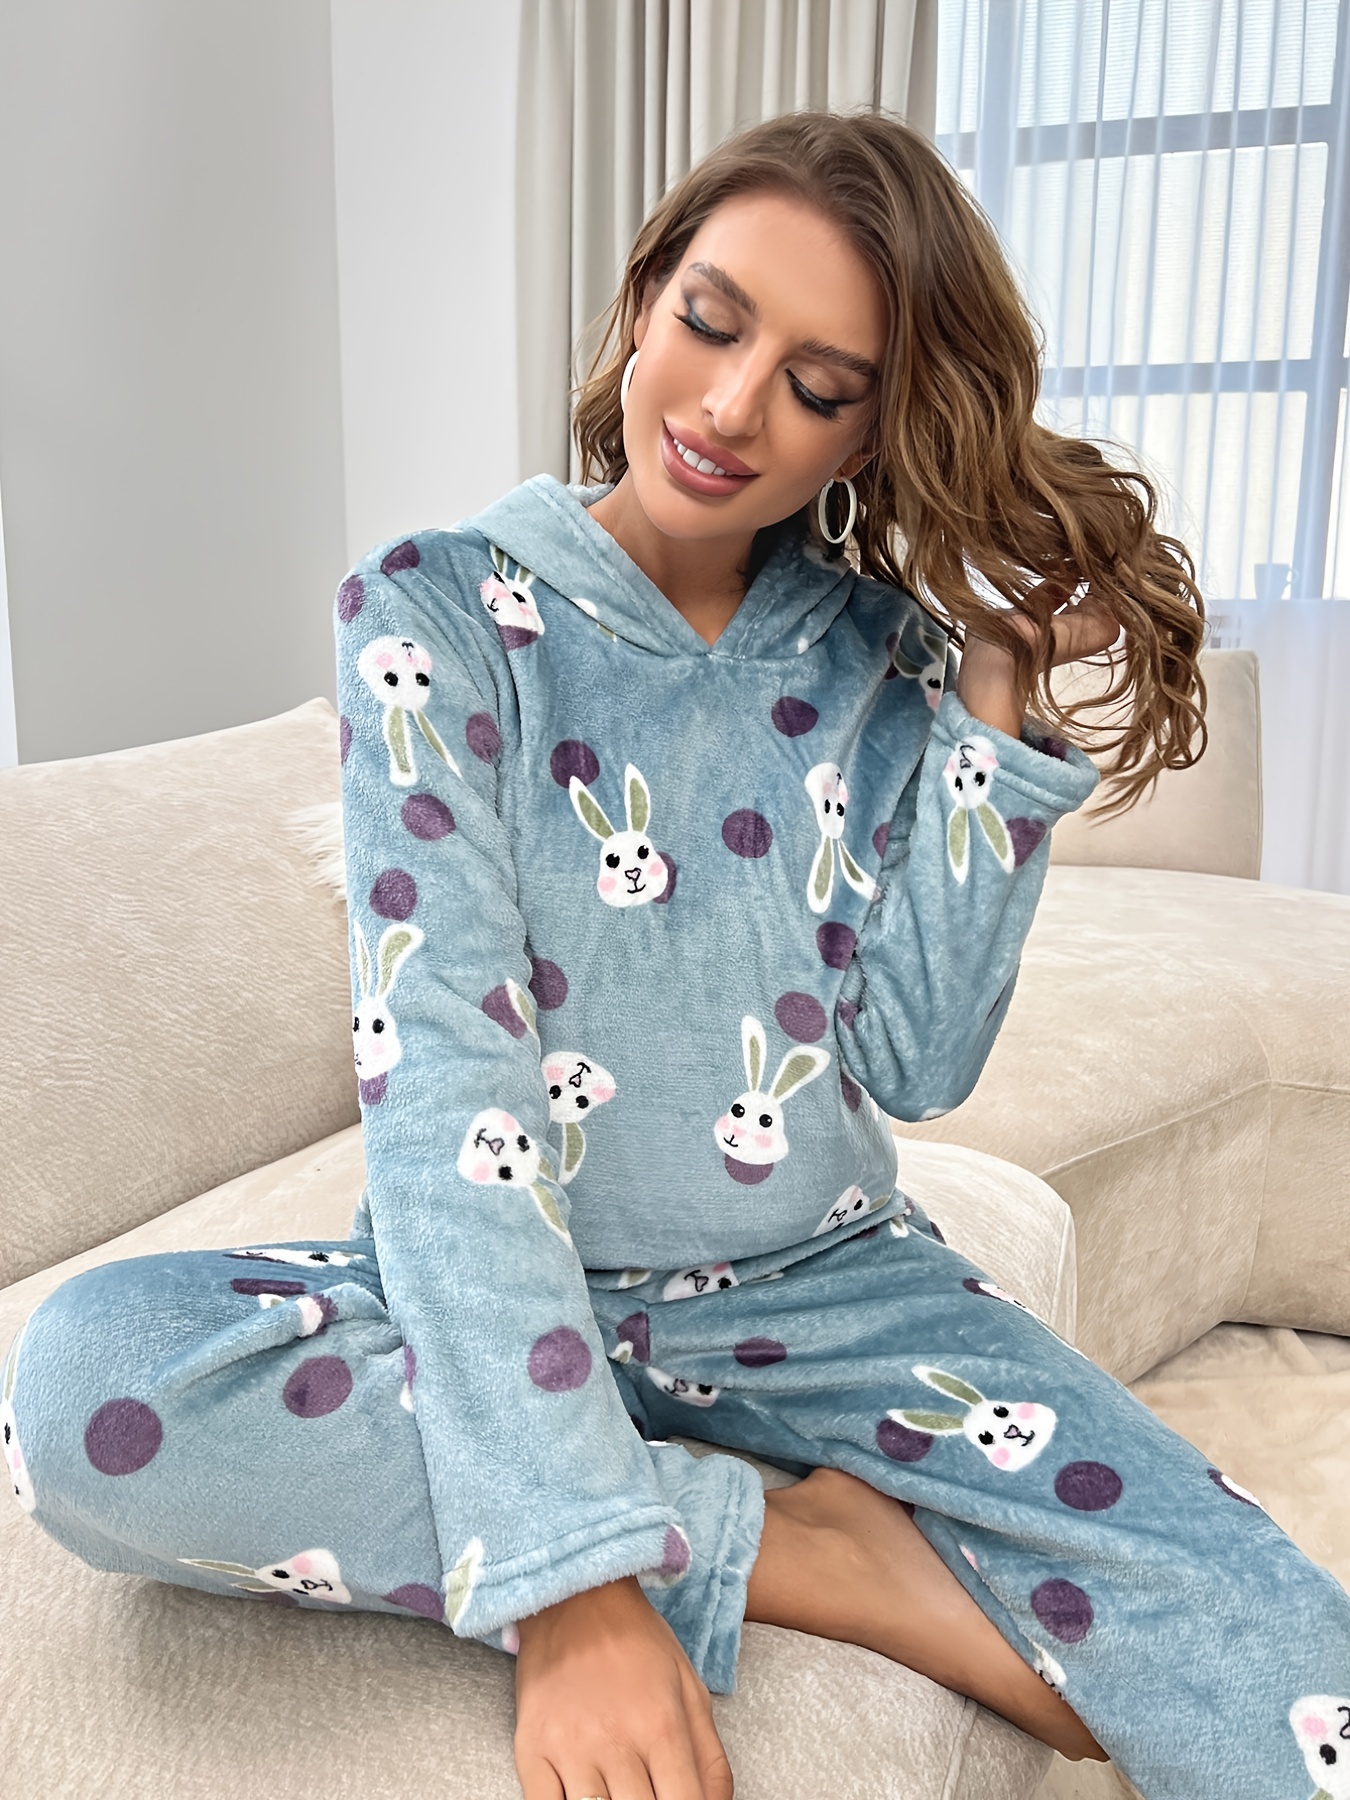 Thermajane Shop Womens Pajamas & Loungewear